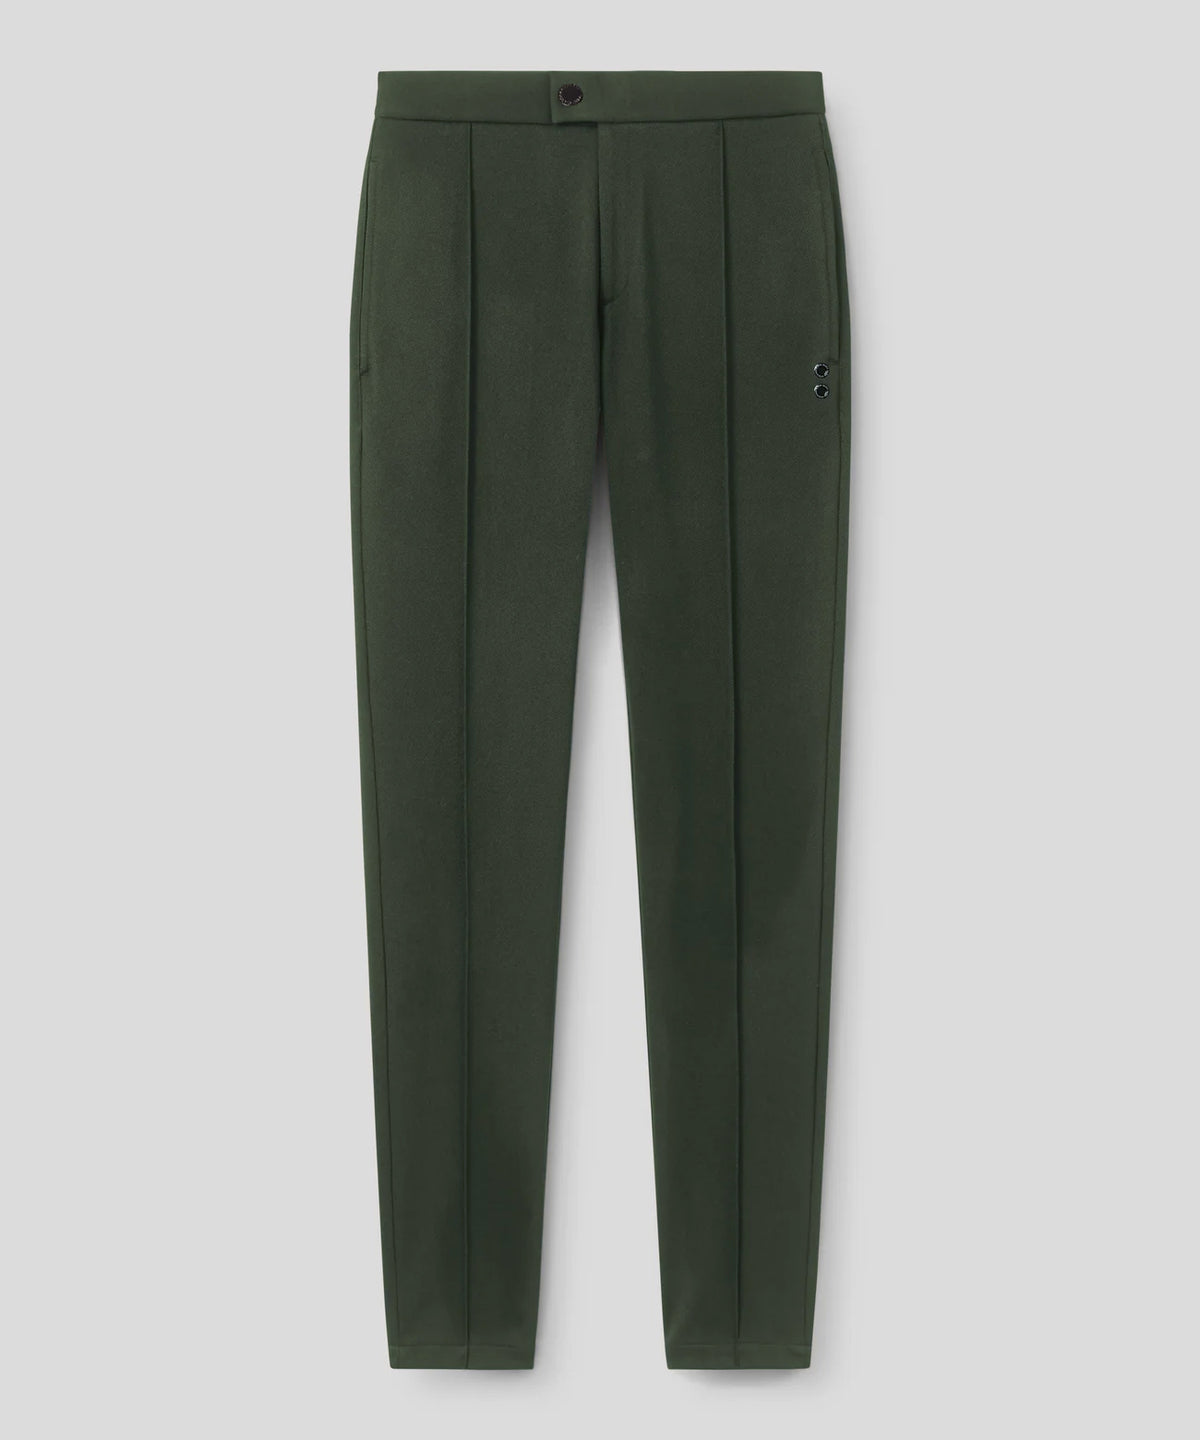 Twill Tennis Pants: Dark Army Green